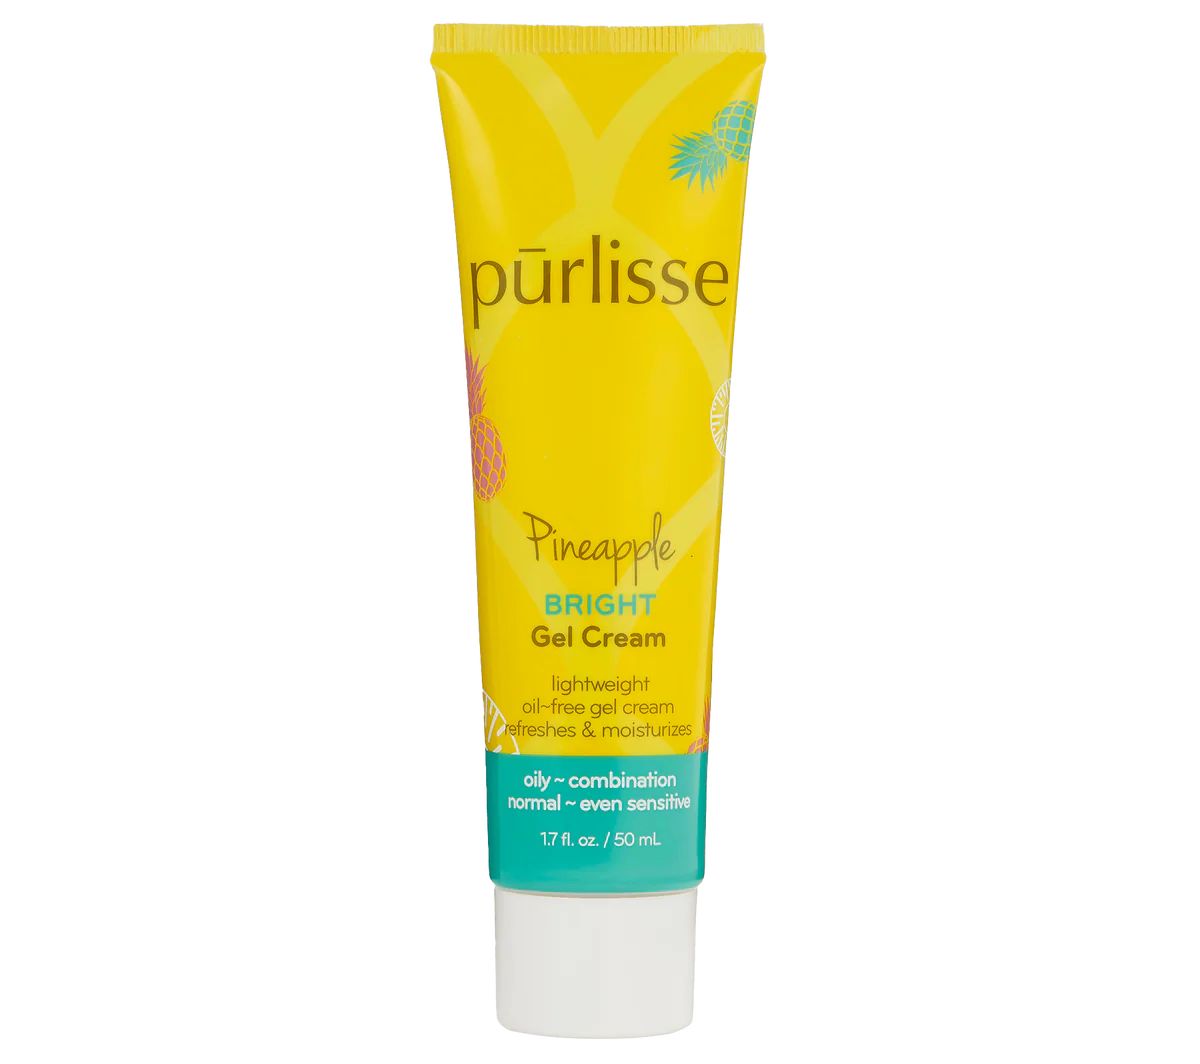 Pineapple Bright Gel Cream | Purlisse